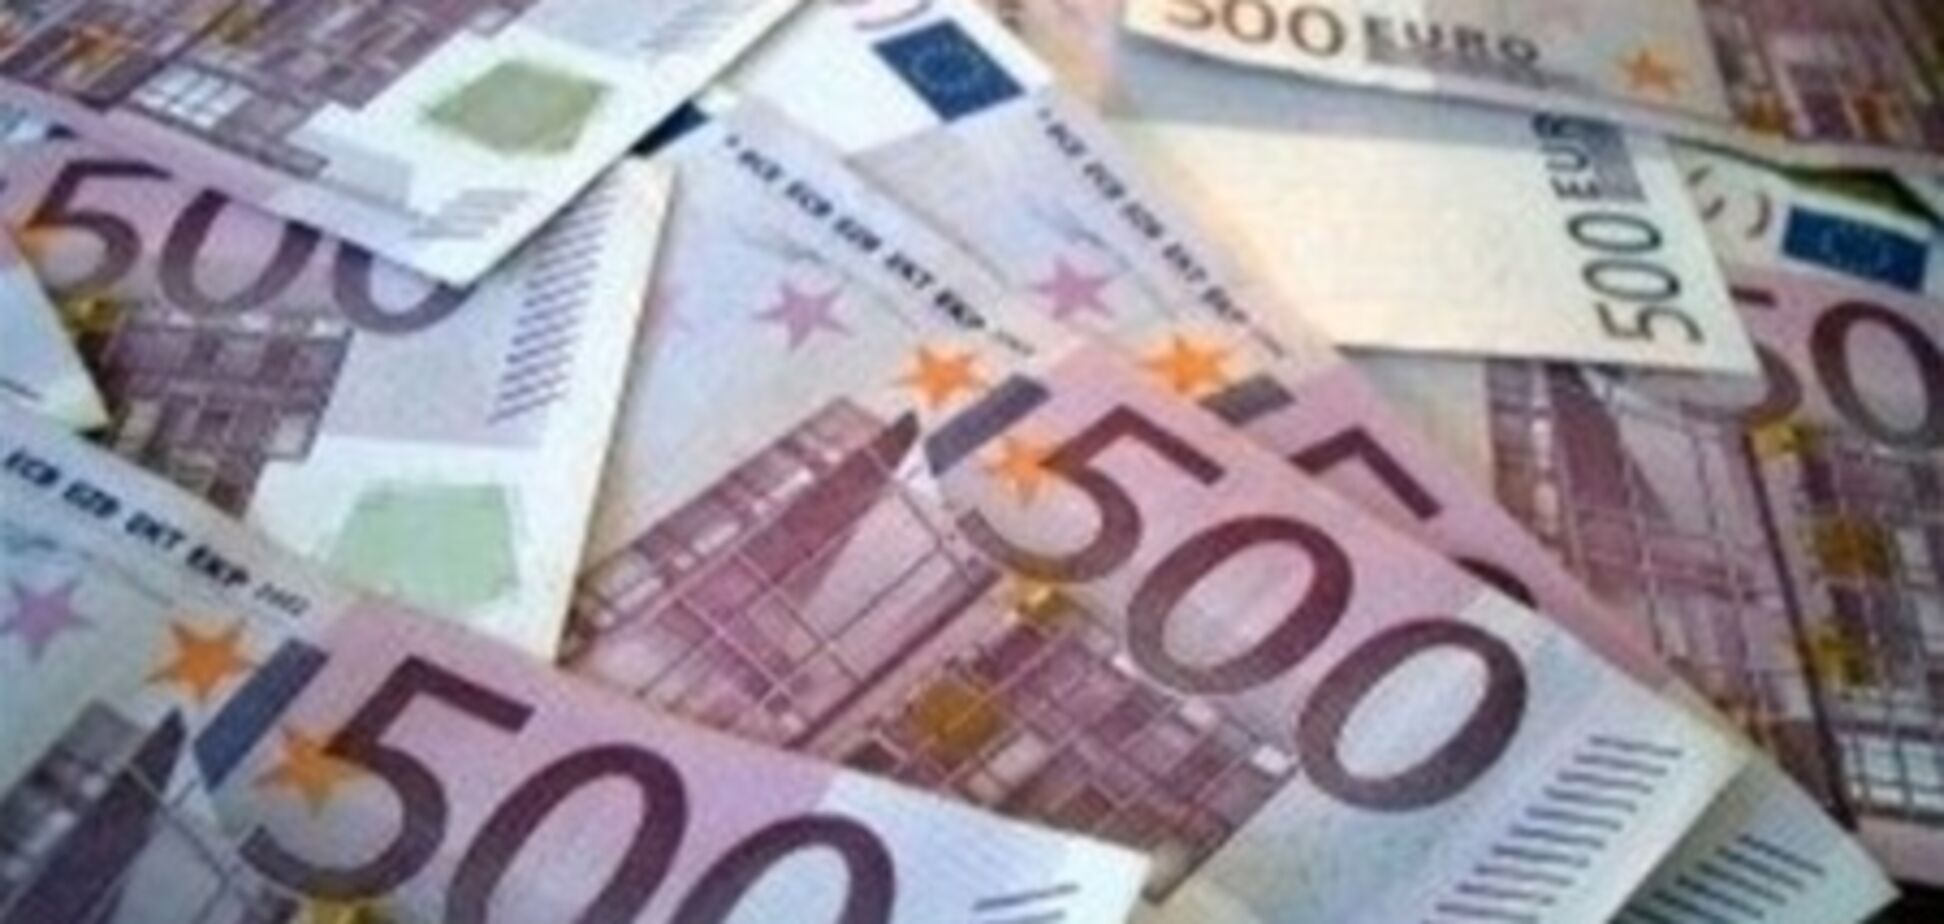 В мире изъято более 300 тысяч фальшивых купюр евро за этот год